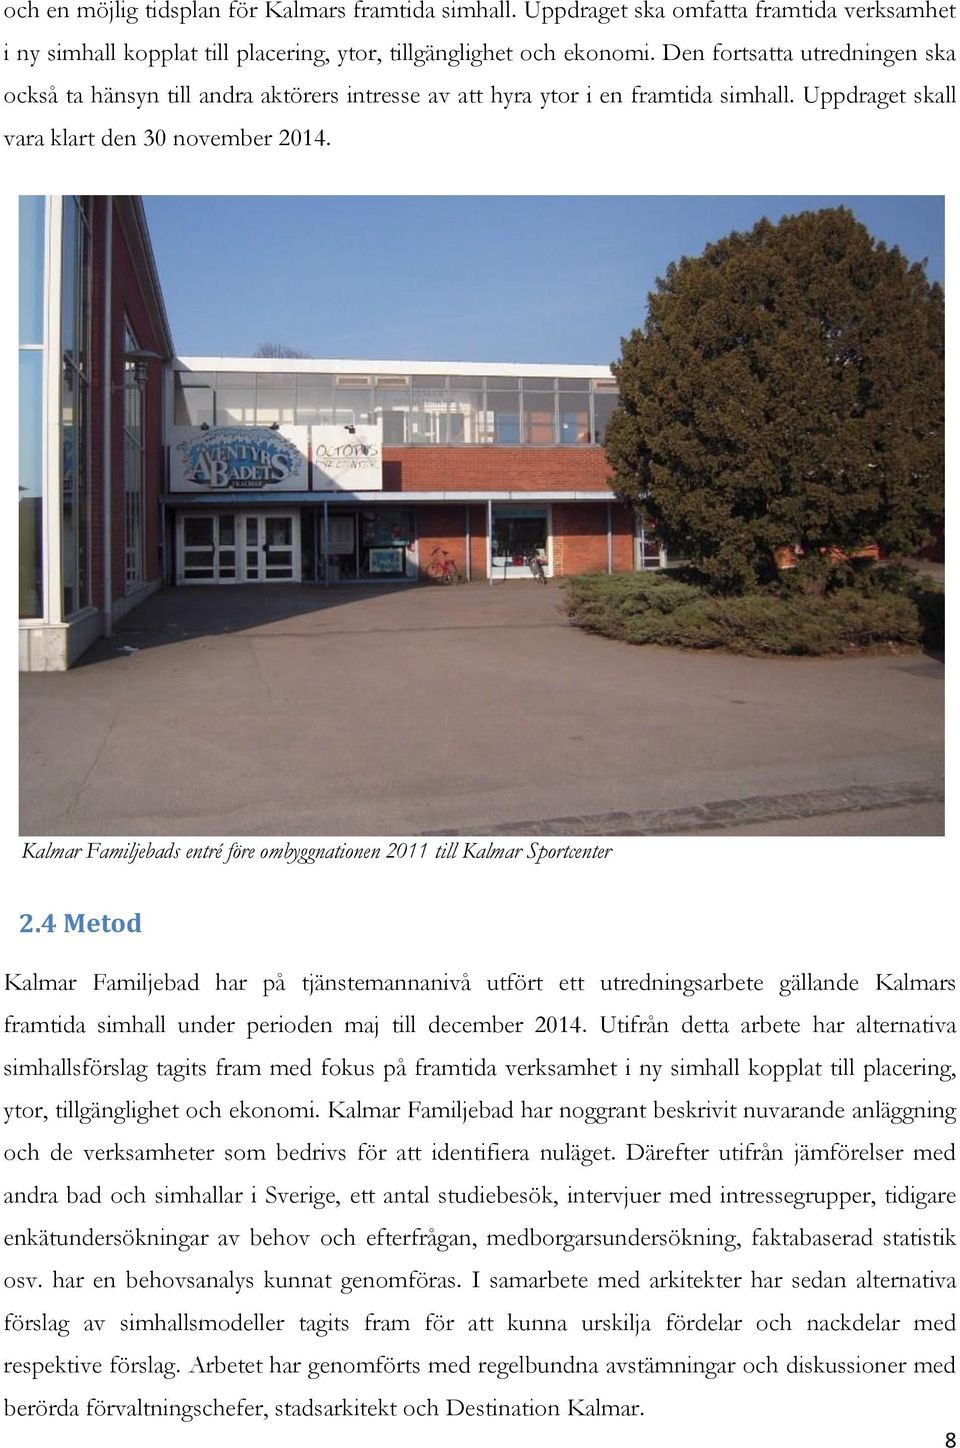 Kalmar Familjebads entré före ombyggnationen 2011 till Kalmar Sportcenter 2.